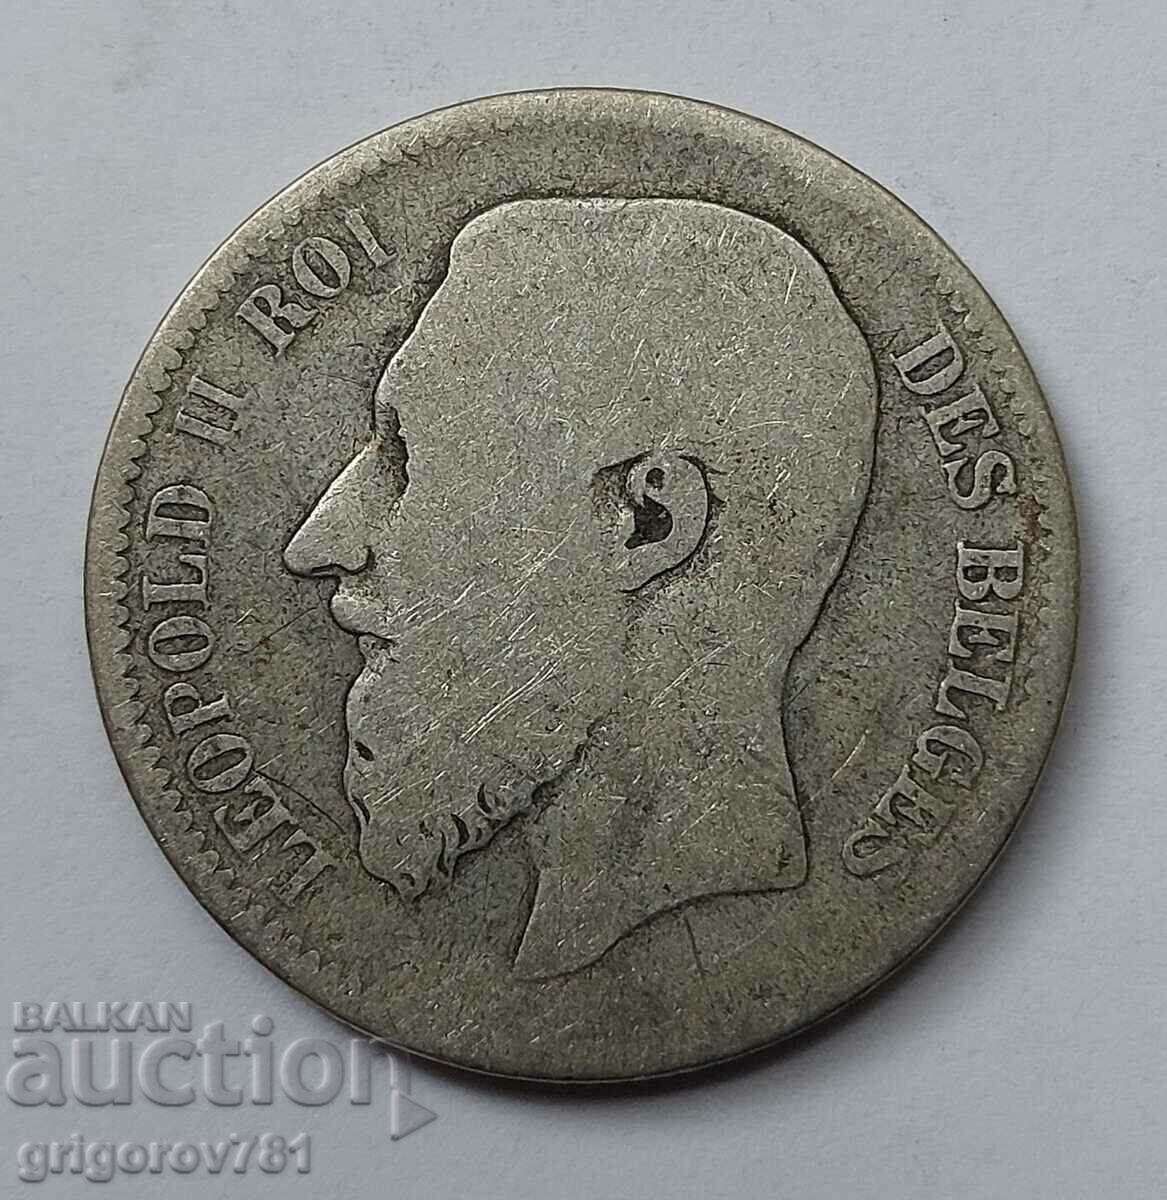 2 Francs Silver Belgium 1866 - Silver Coin #160